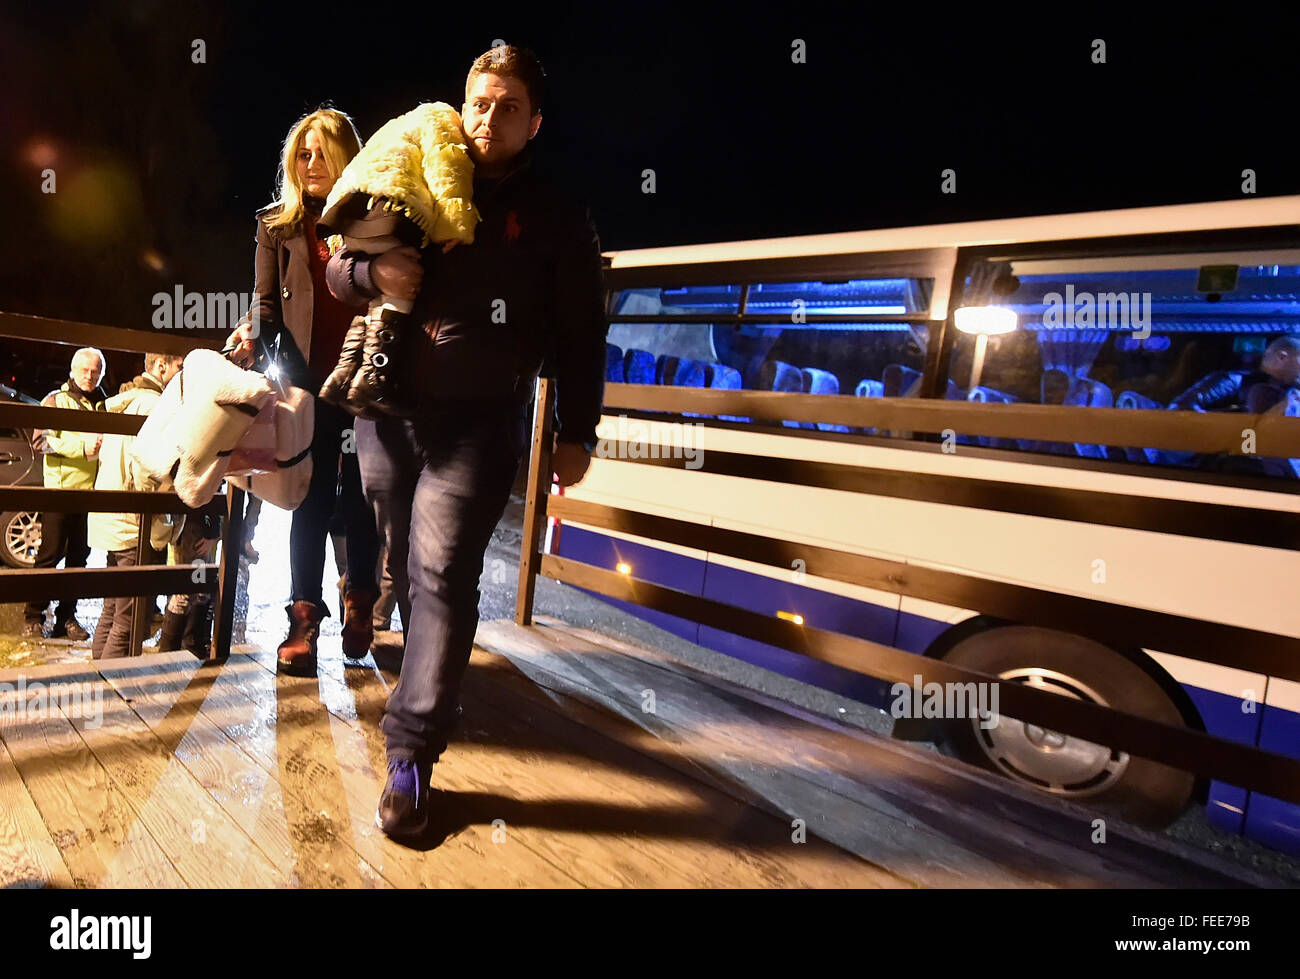 Prag, Tschechische Republik. 5. Februar 2016. Die zweite Gruppe von christlichen Flüchtlingen aus dem Irak kam nach der Okrouhlik Freizeitzentrum in der Nähe von Jihlava, Süd-Mähren, Tschechische Republik, 5. Februar 2016. Ersten 10 kamen Ende Januar, Rest wird in den nächsten Wochen kommen. Siebzehn irakische Flüchtlingen, darunter neun Kinder, landete am internationalen Flughafen Vaclav Havel in Prag am 5. Februar als zweites von mehreren Gruppen von Christen aus dem Irak, von denen der Tschechischen Republik 153 dieses Jahr akzeptieren will. Bildnachweis: CTK/Alamy Live-Nachrichten Stockfoto